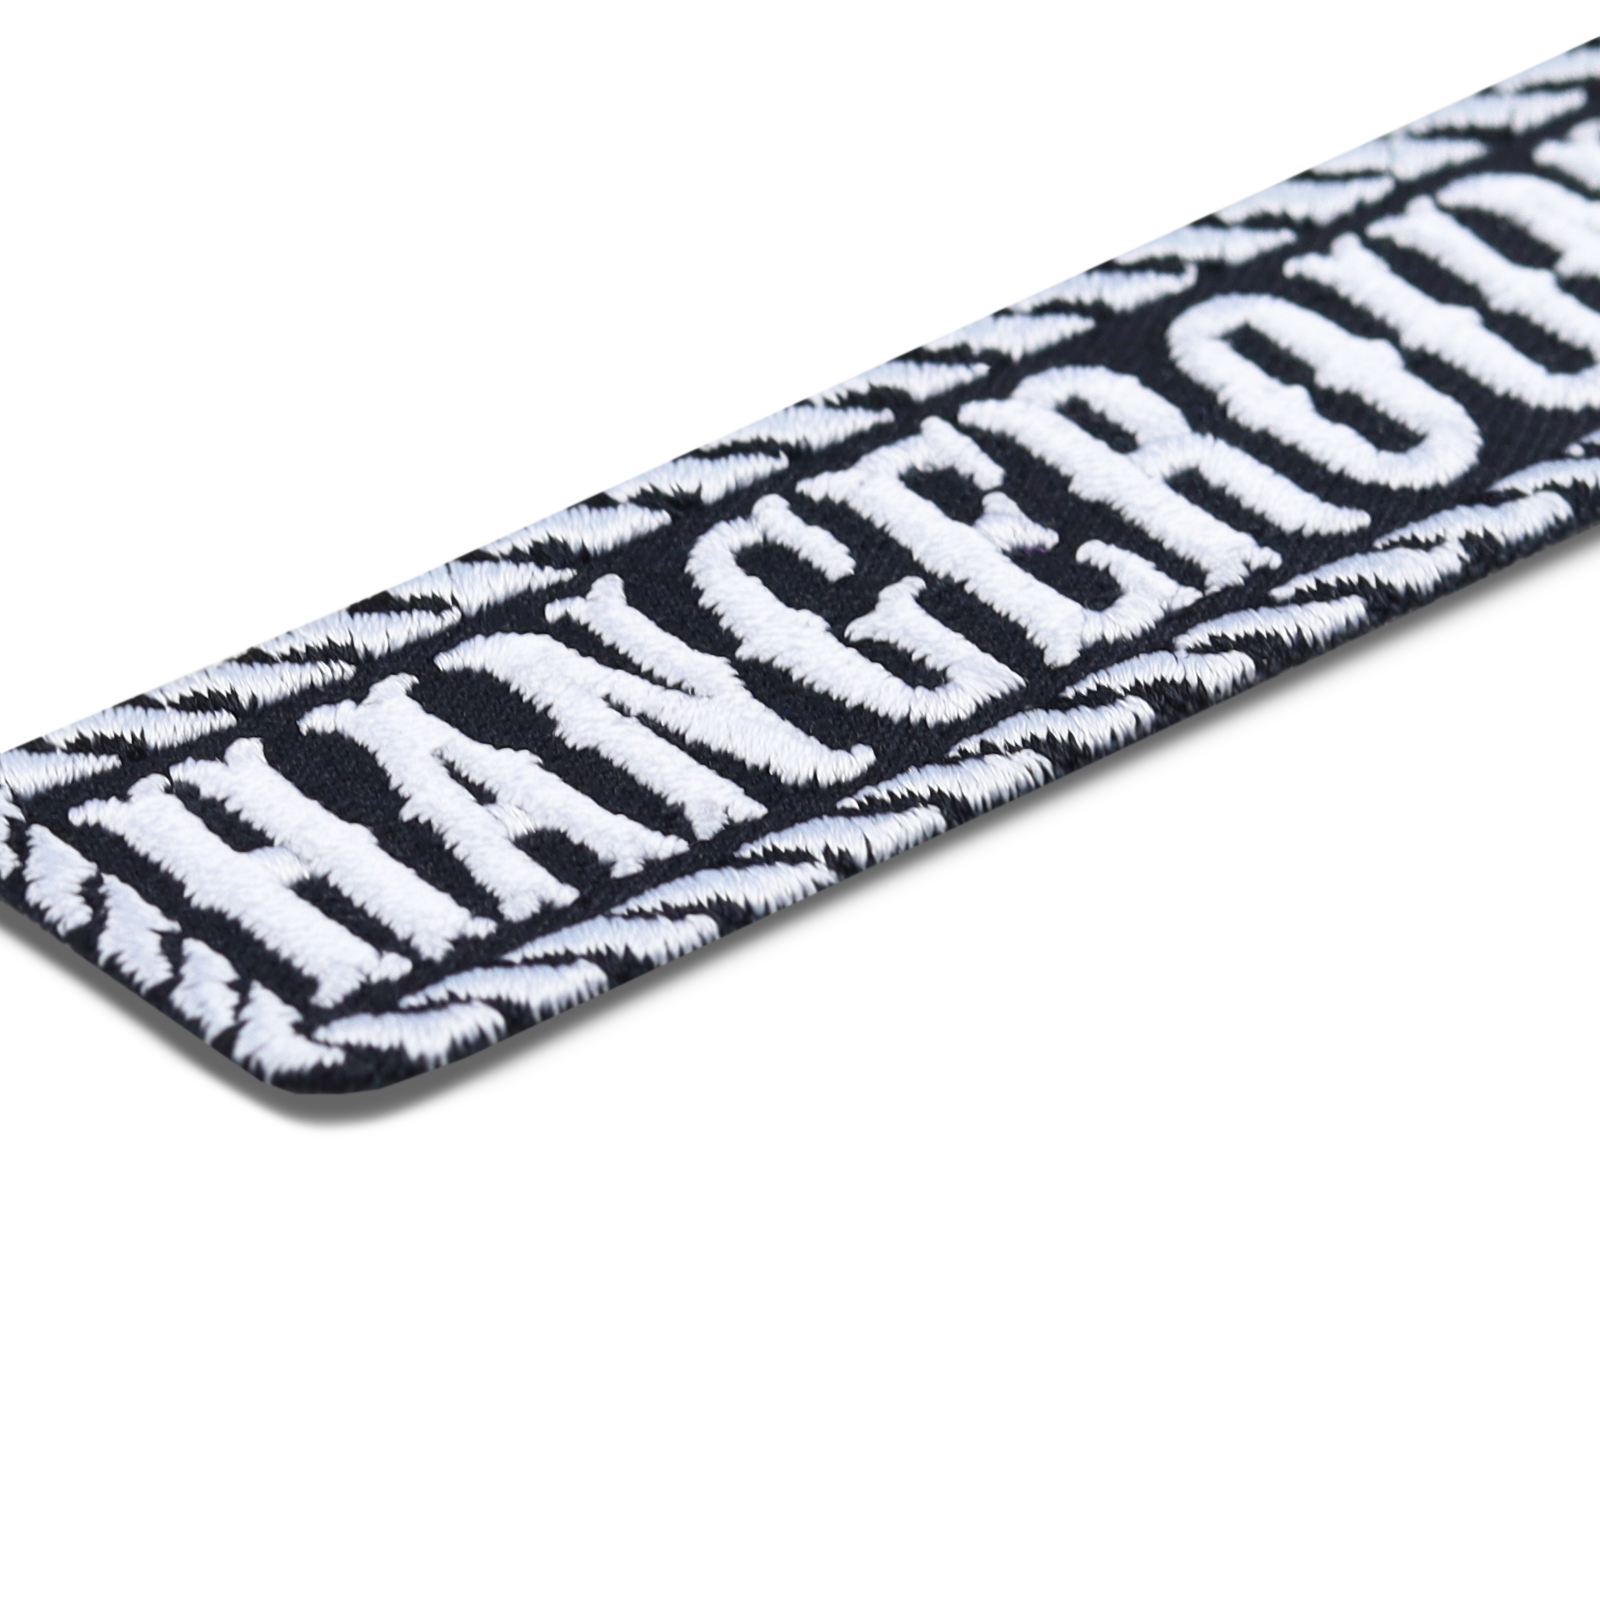 Hangeround - Patch